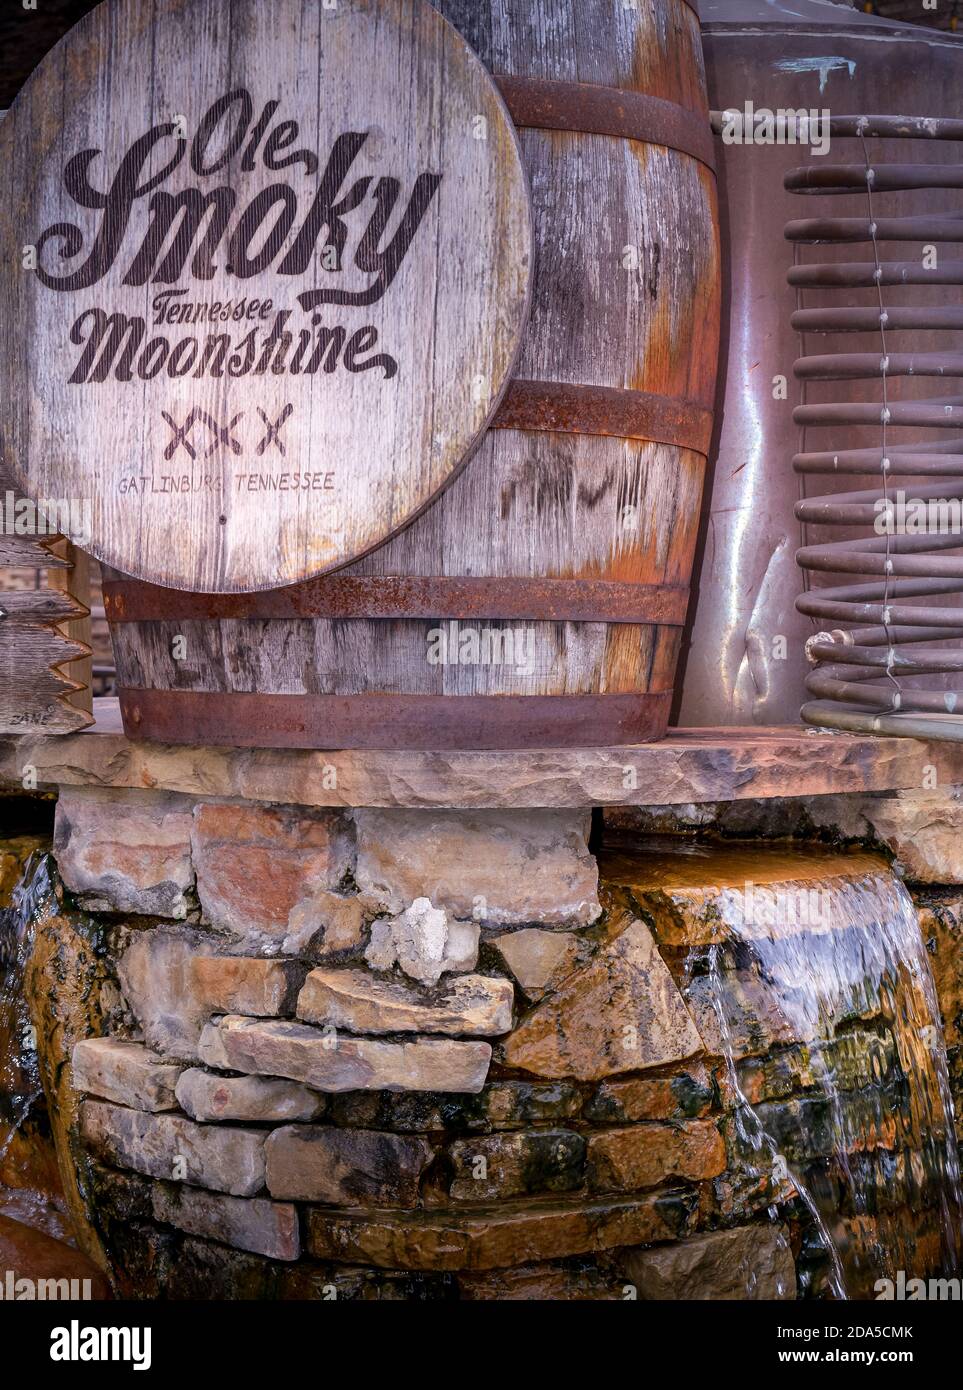 Un barile di quercia all'aperto e una pubblicità esposta su una cascata di acqua presso la distilleria Ole Smoky Tennessee Moonshine, Gatlinburg, TN Foto Stock